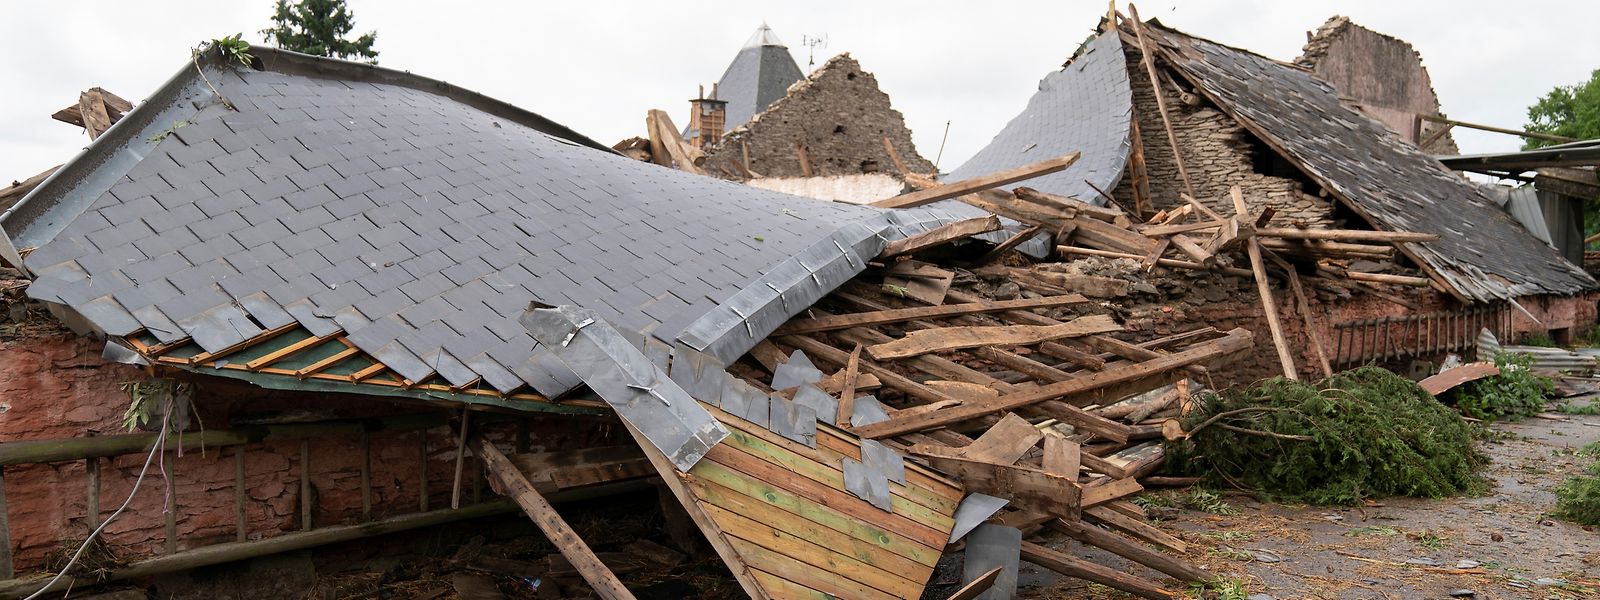 In der belgischen Gemeinde Houffalize hat ein Tornado größeren Sachschaden angerichtet.